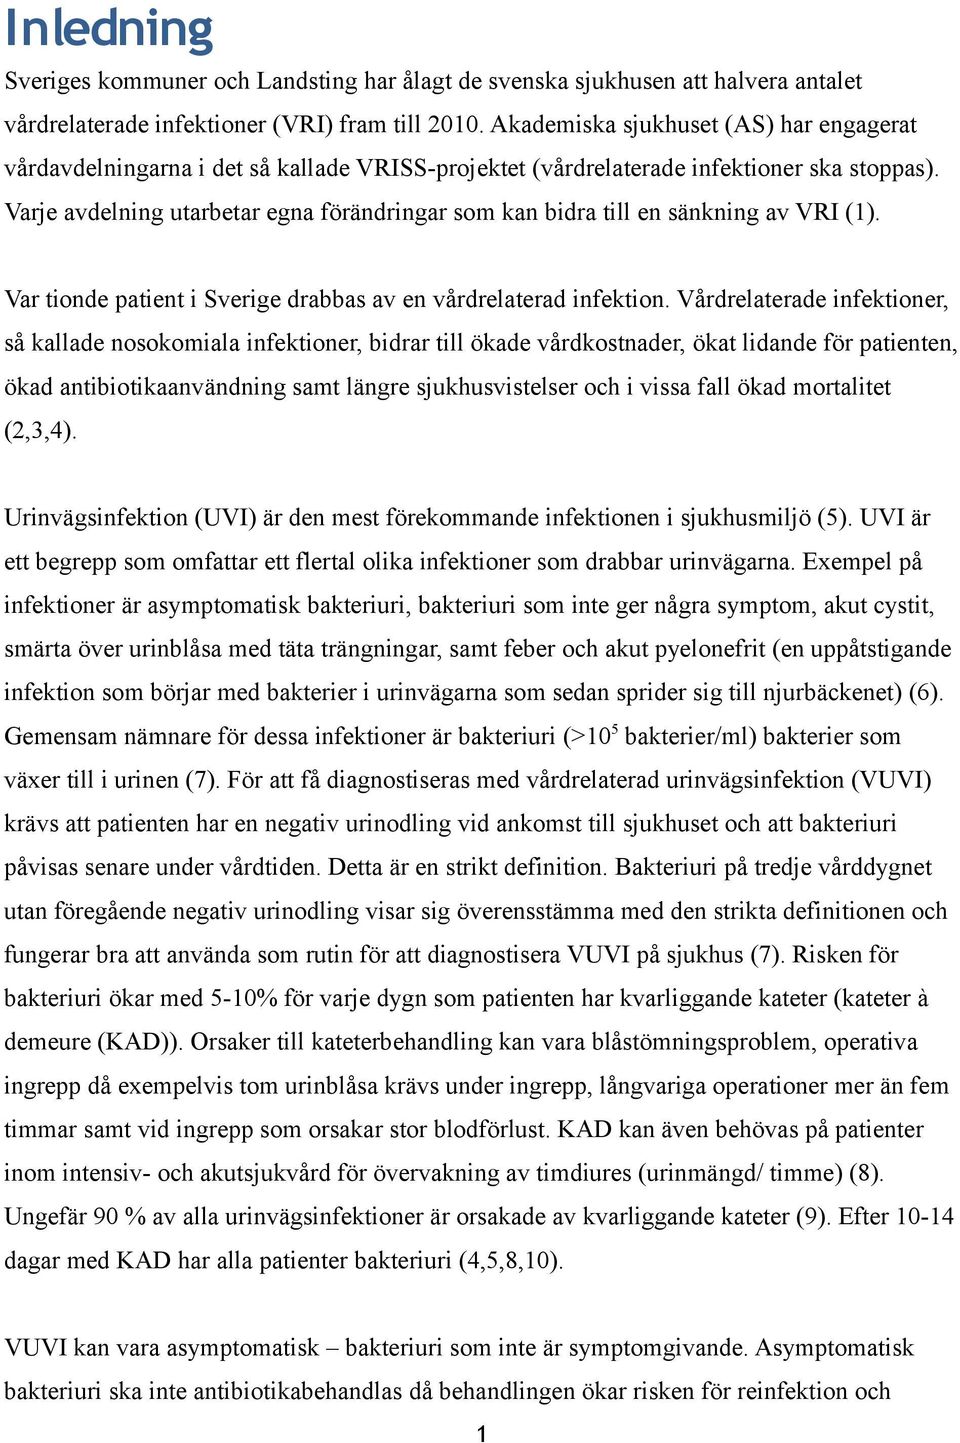 Varje avdelning utarbetar egna förändringar som kan bidra till en sänkning av VRI (1). Var tionde patient i Sverige drabbas av en vårdrelaterad infektion.